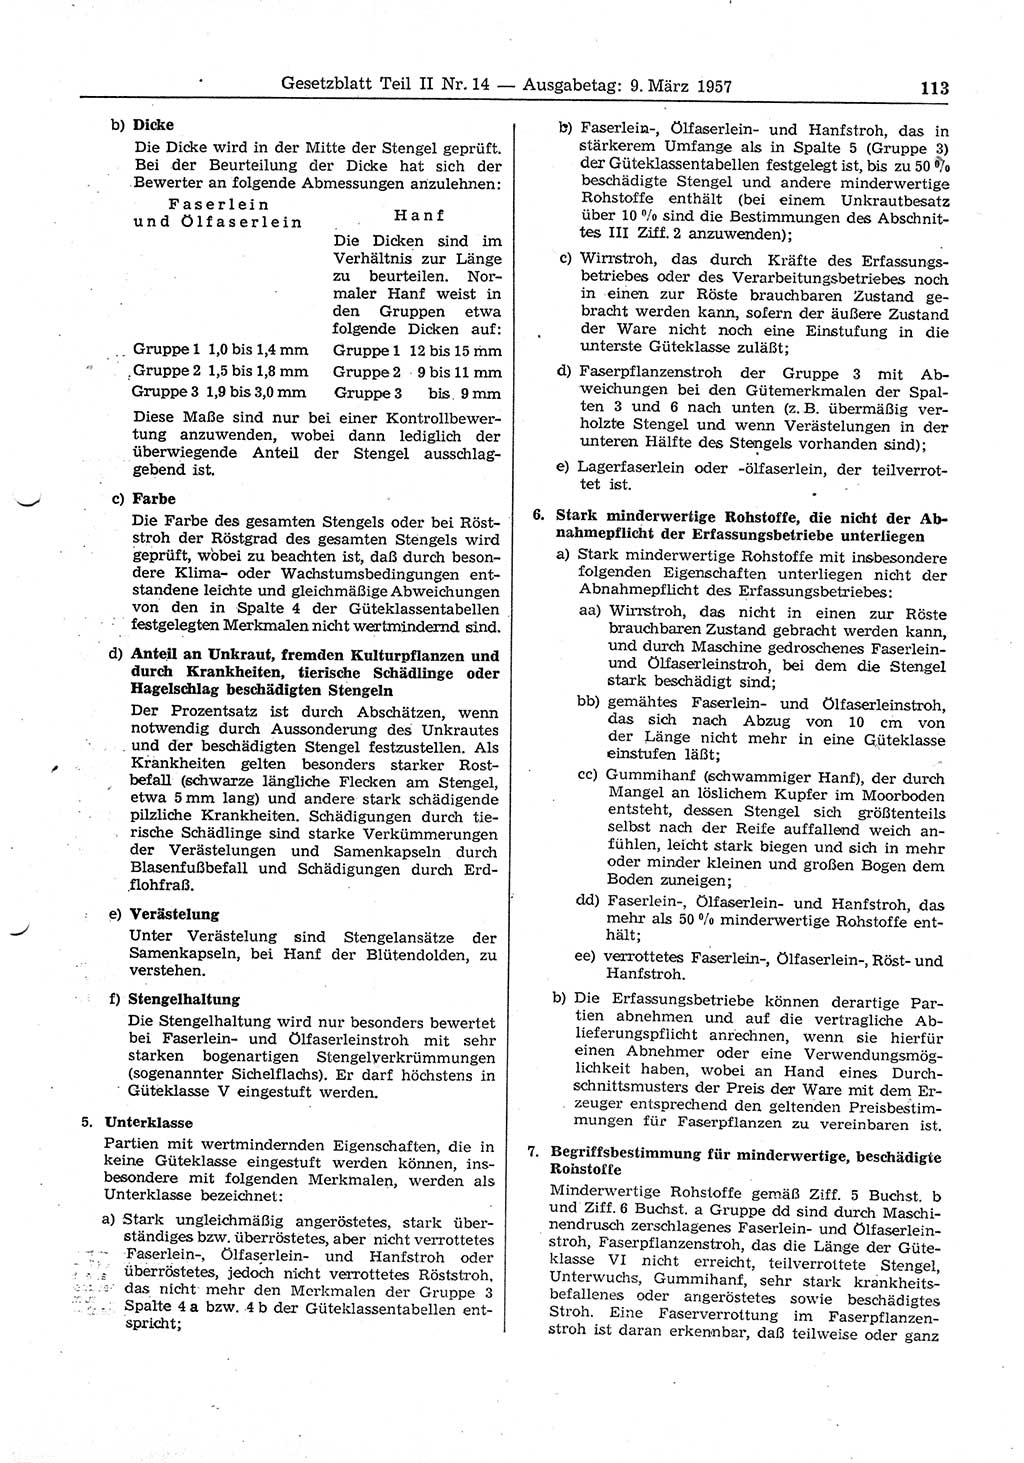 Gesetzblatt (GBl.) der Deutschen Demokratischen Republik (DDR) Teil ⅠⅠ 1957, Seite 113 (GBl. DDR ⅠⅠ 1957, S. 113)